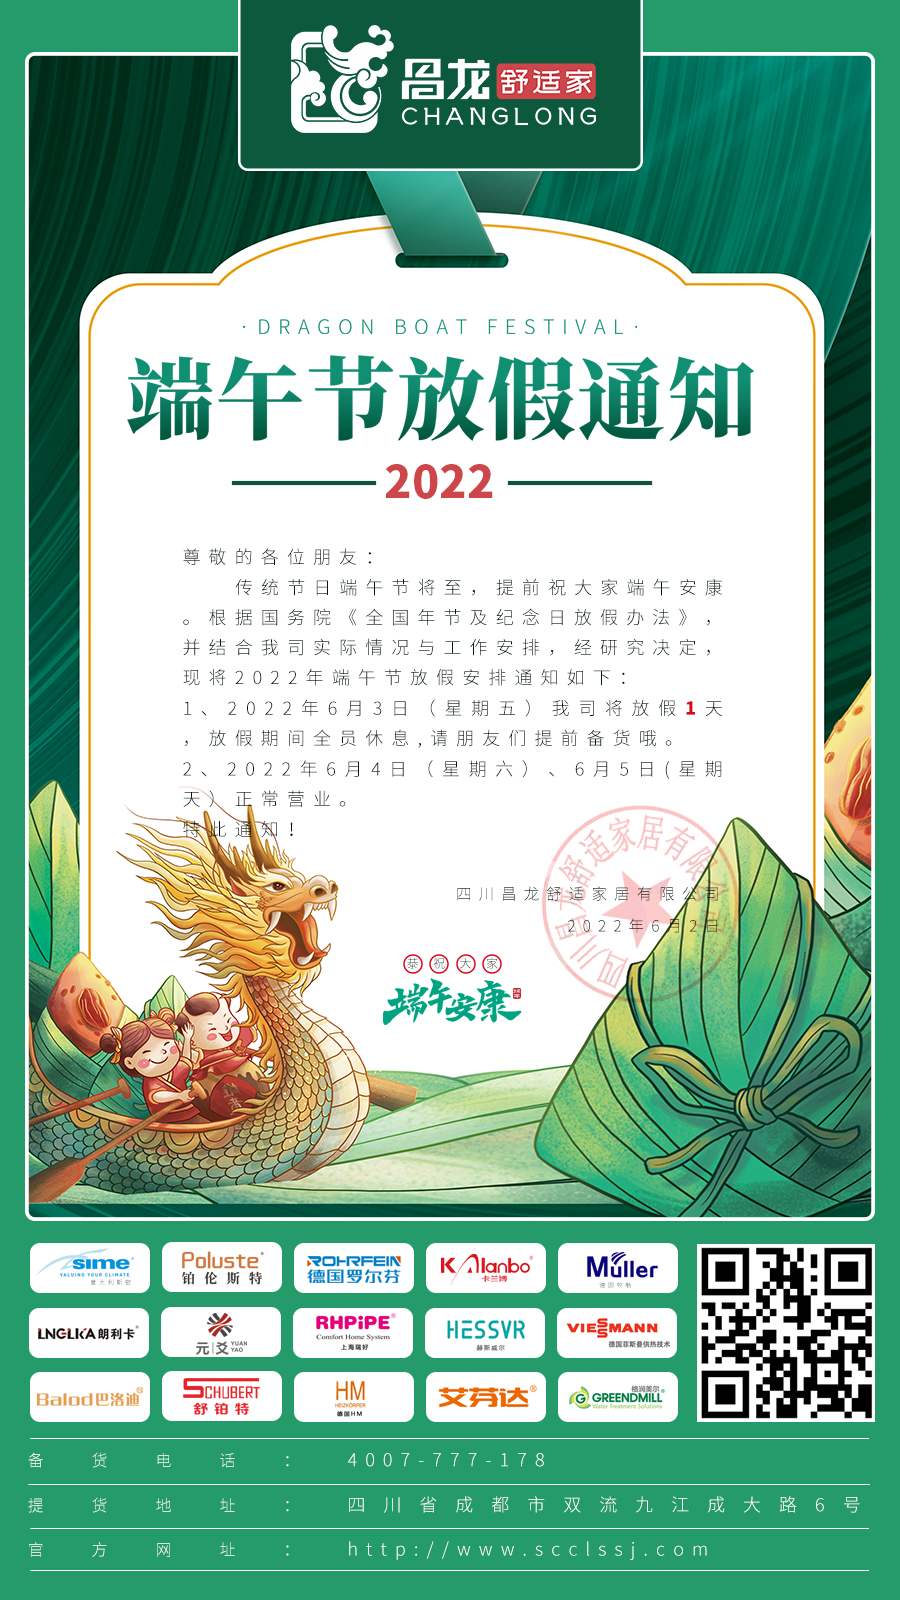 四川昌龙舒适家居有限公司2022年端午节放假通知